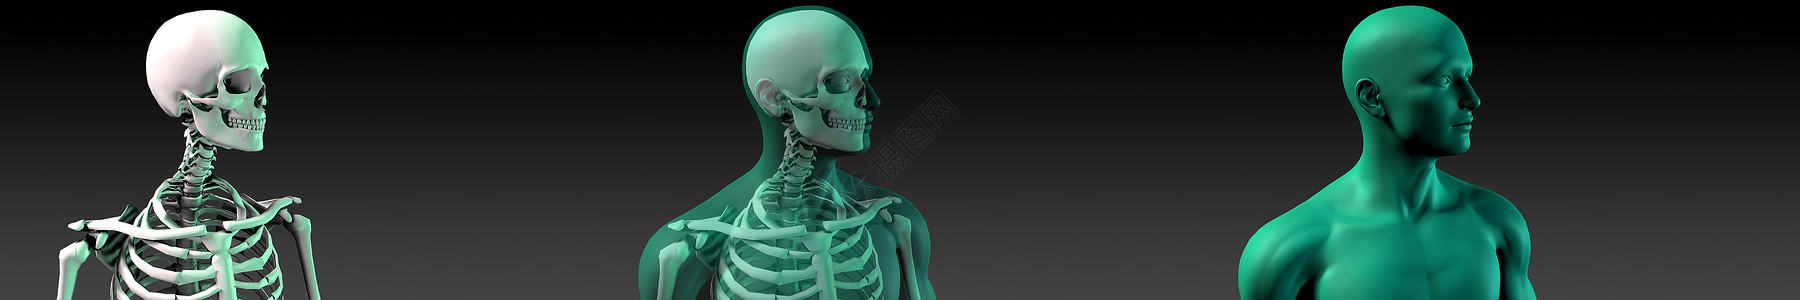 人体骨骼结构图蓝色科学身体墙纸风湿解剖学关节疾病手术疼痛背景